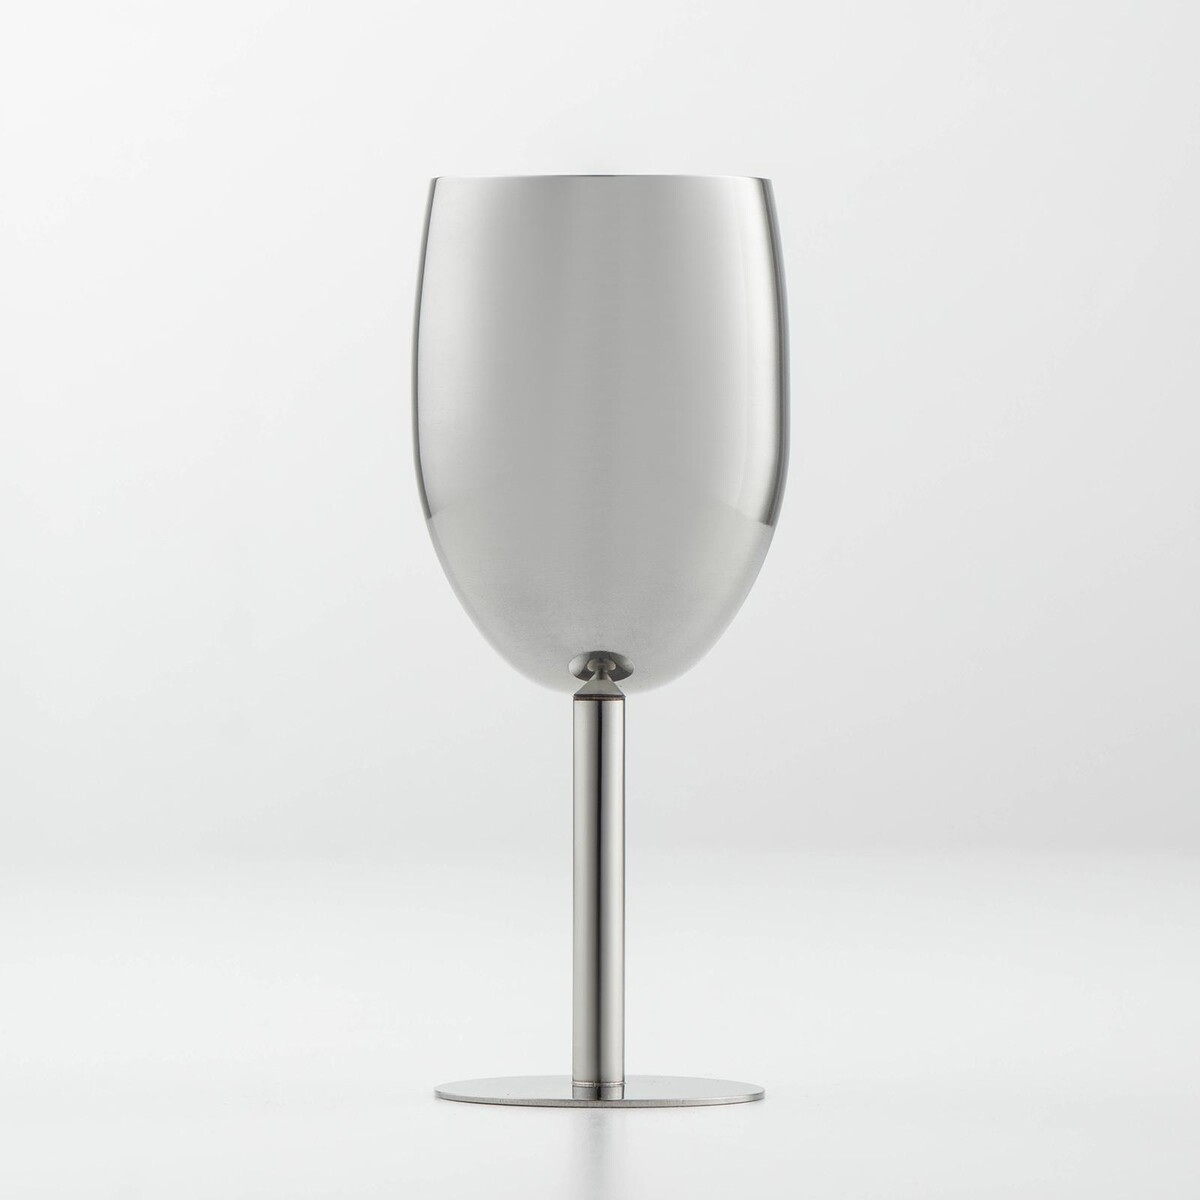 Бокал винный из нержавеющей стали для коктейлей, 17×7 см, цвет хромированный бокал шампанского